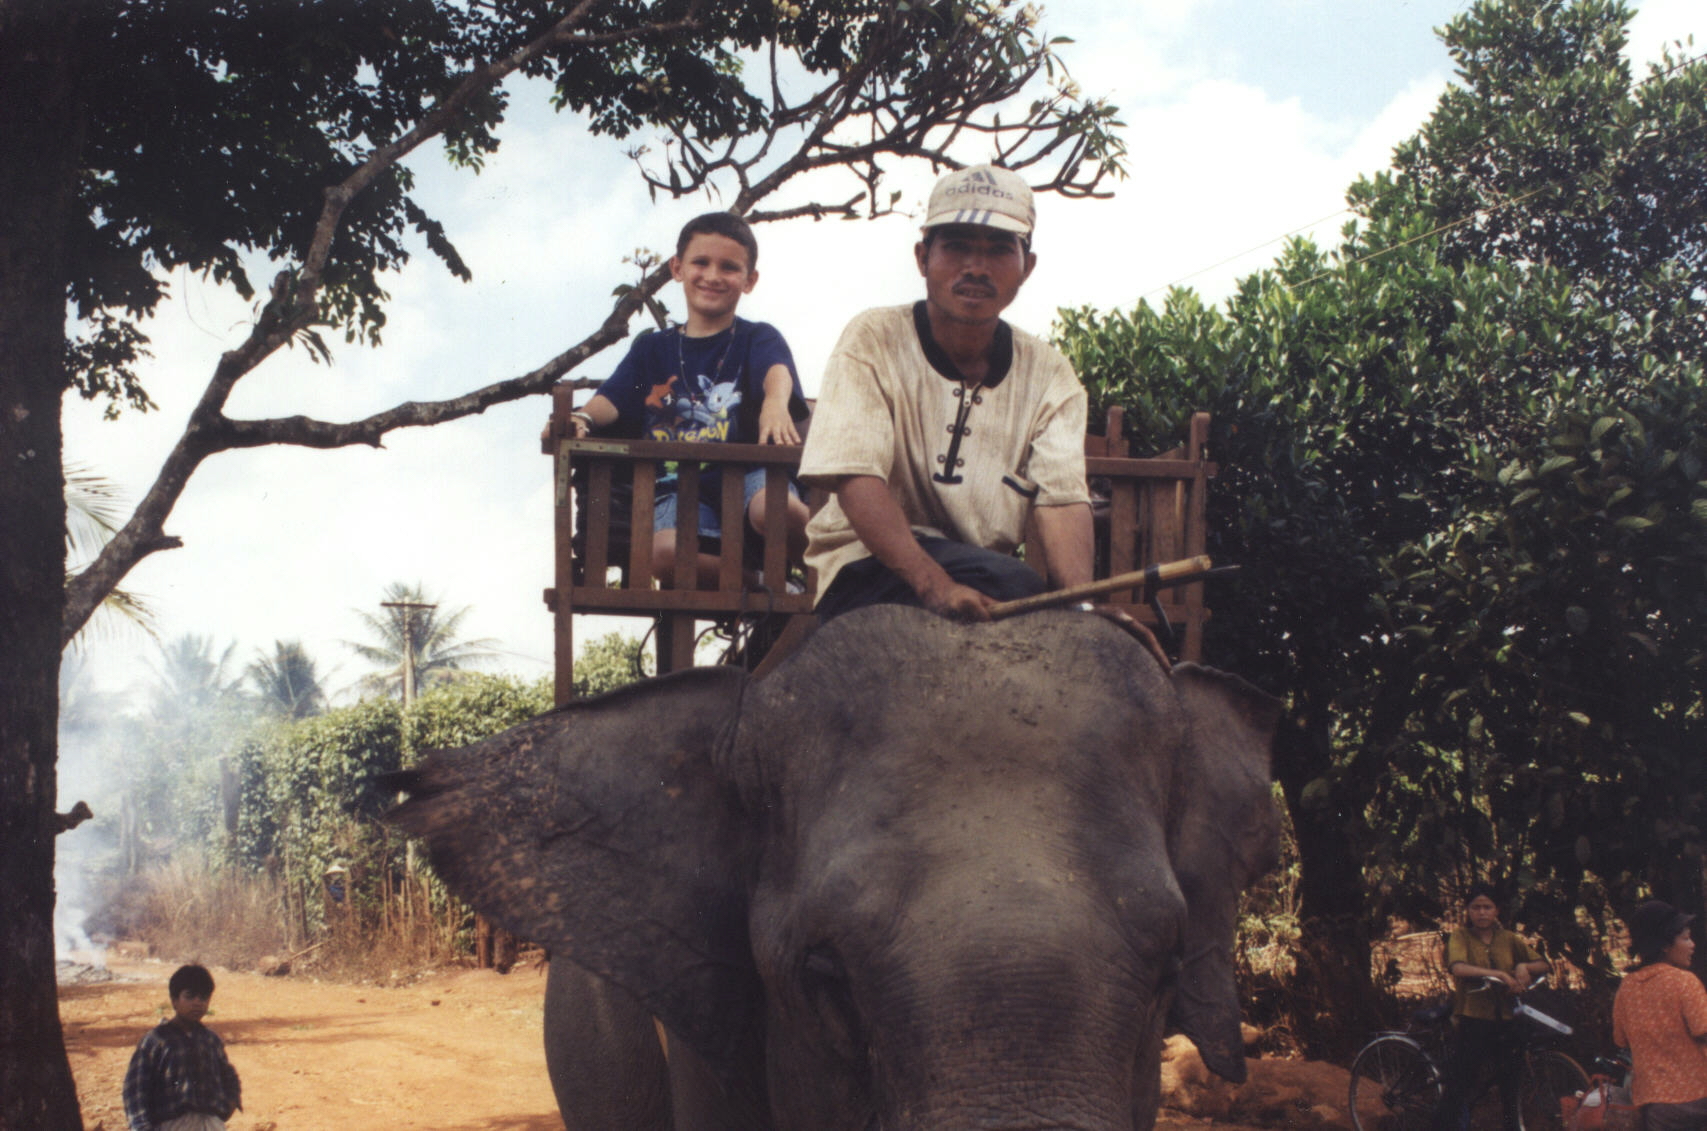 Sean riding on an elephant